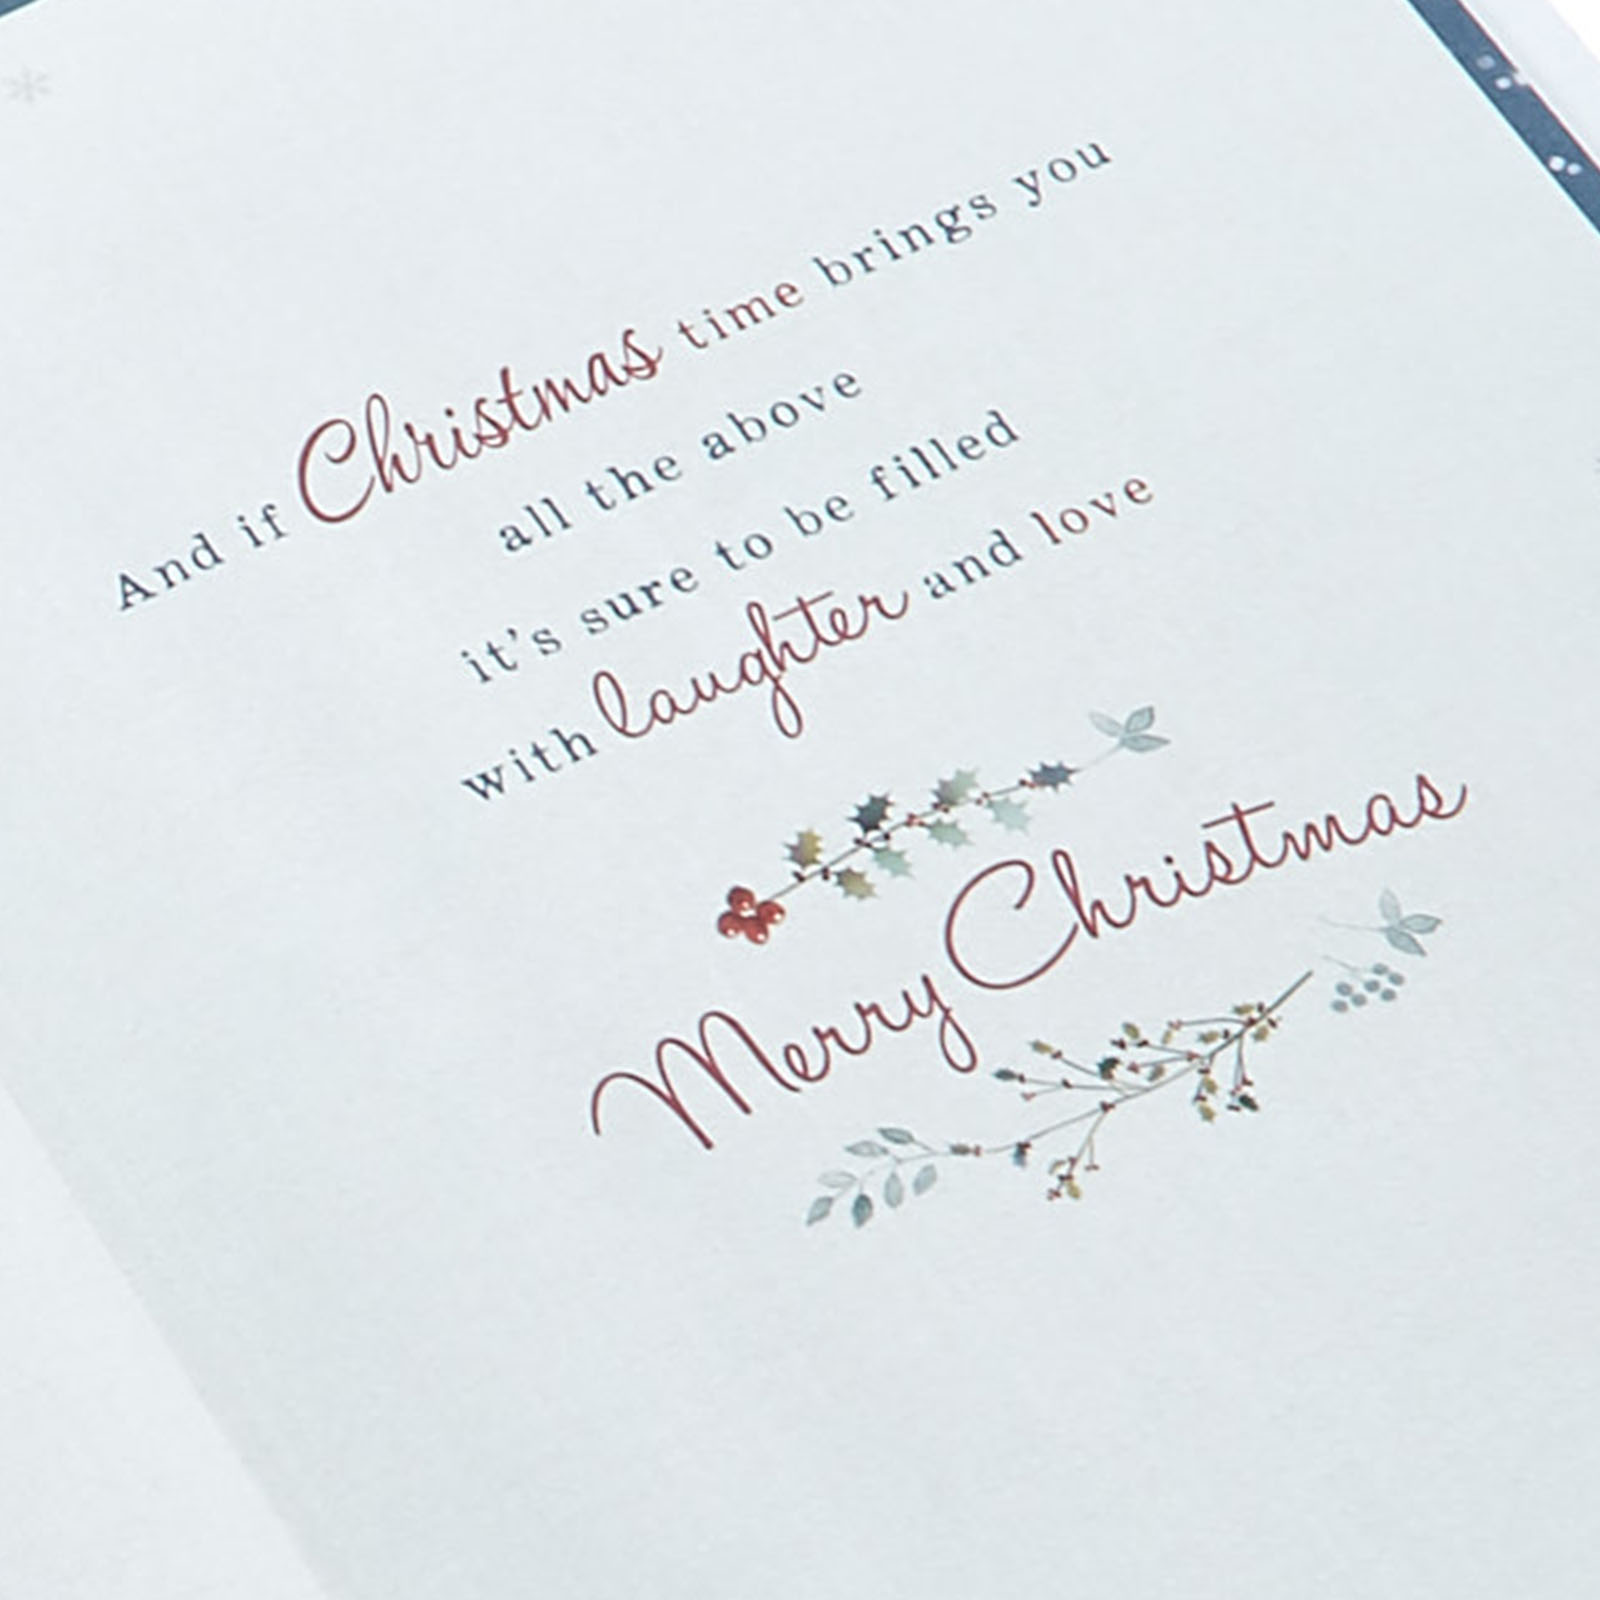 Christmas Card - A Wonderful Son & Family